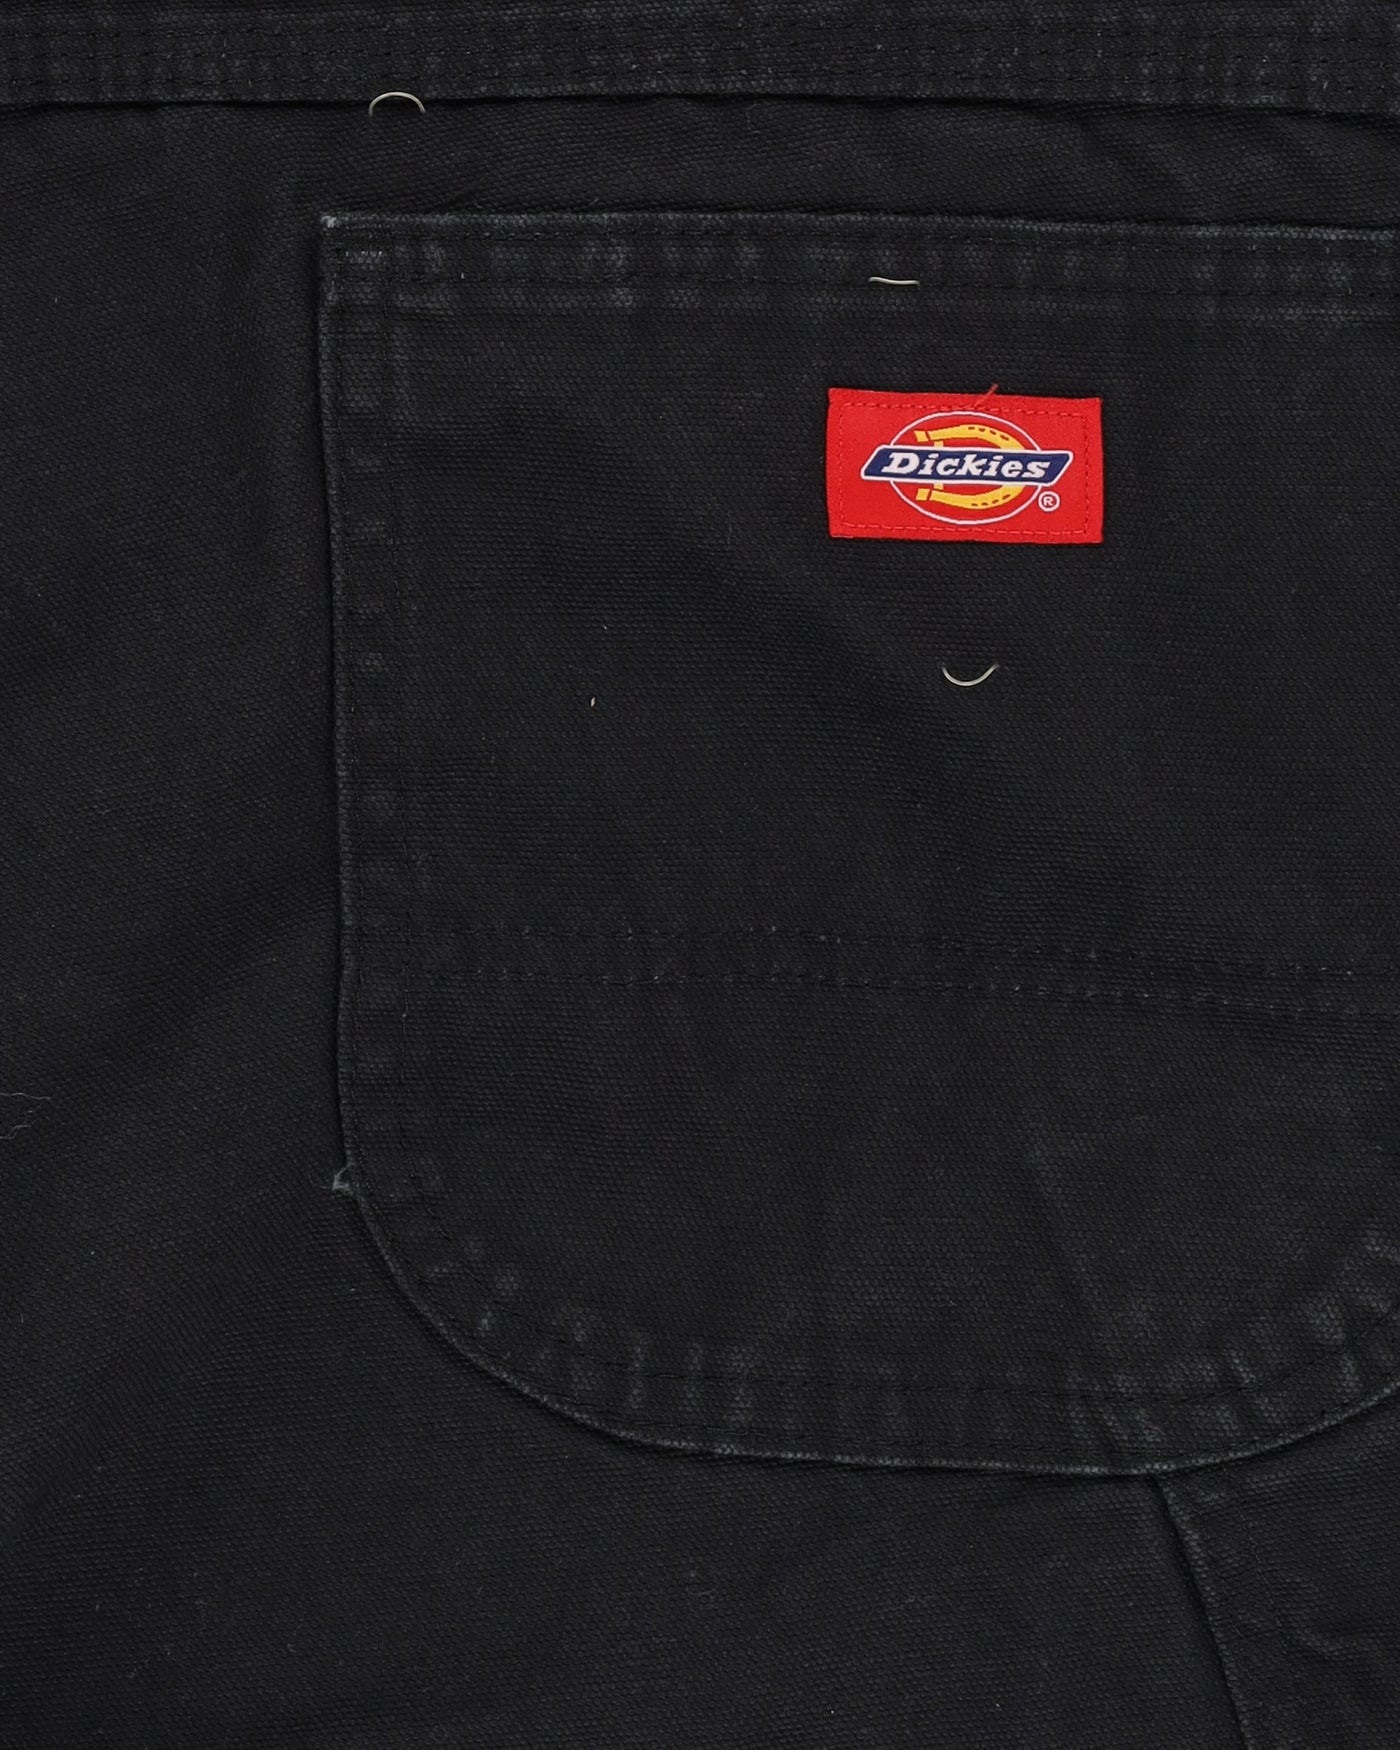 Dickies Black Workwear Jeans - W34 L31